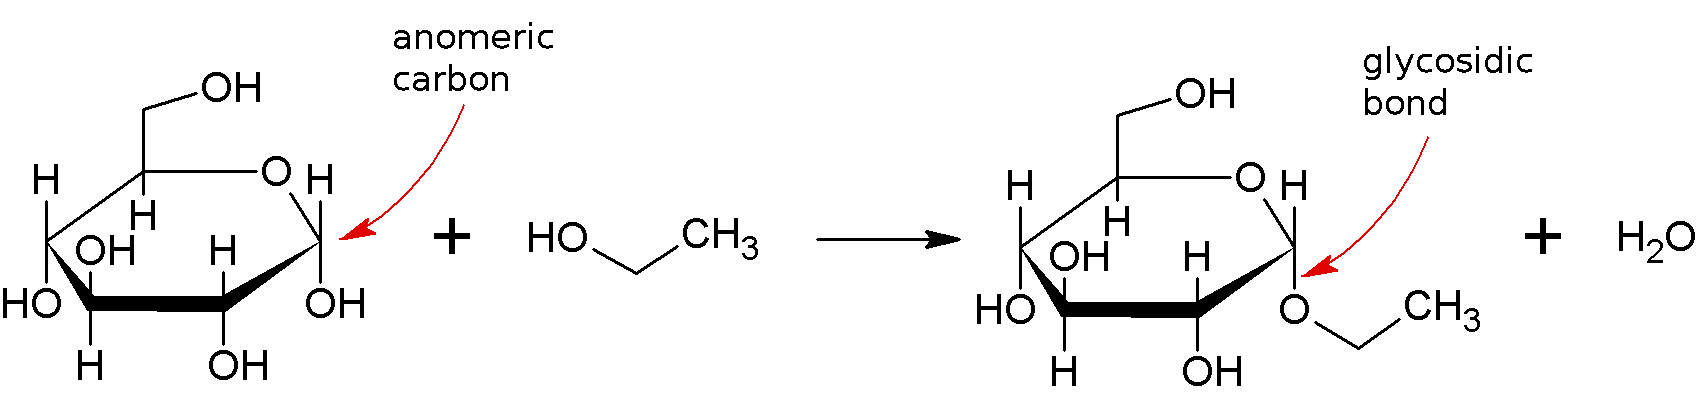 グリコシド結合の形成